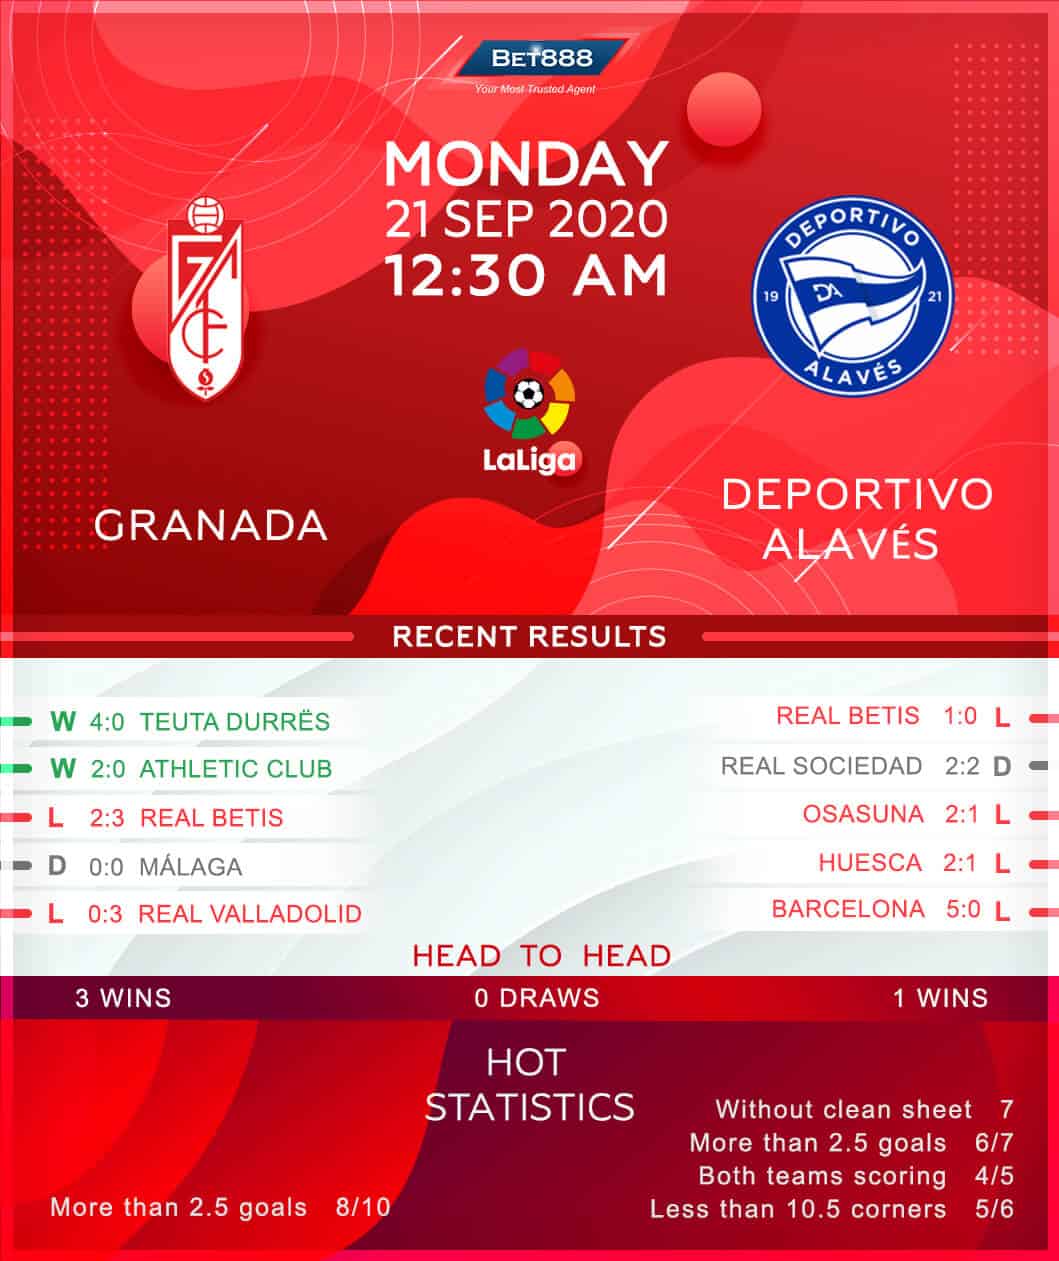 Granada vs Deportivo Alaves﻿ 21/09/20